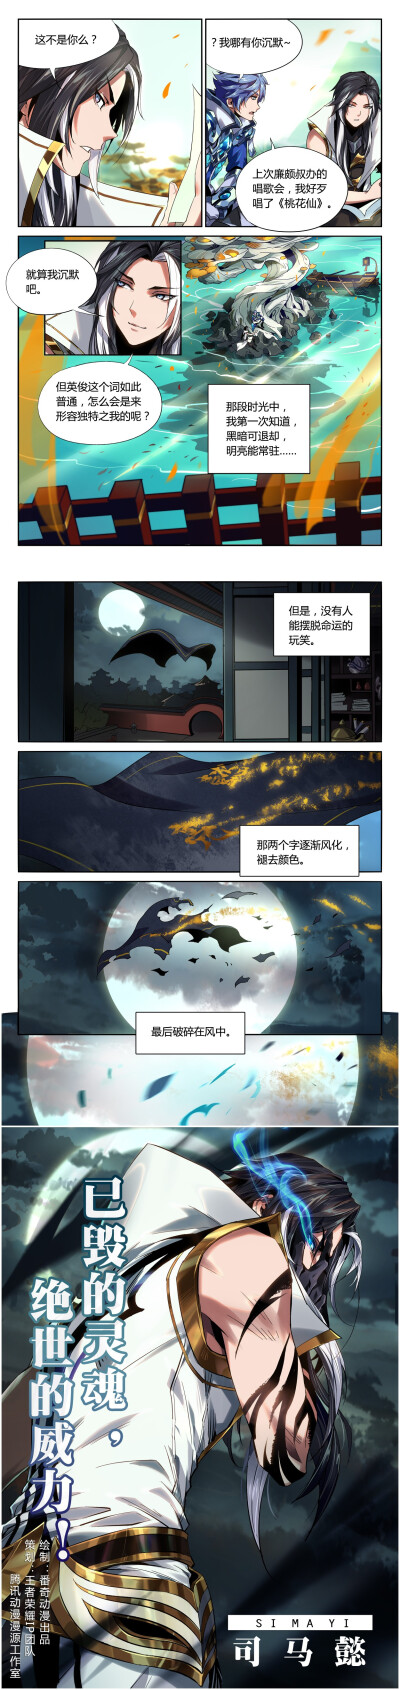 王者荣耀漫画 司马懿的故事5